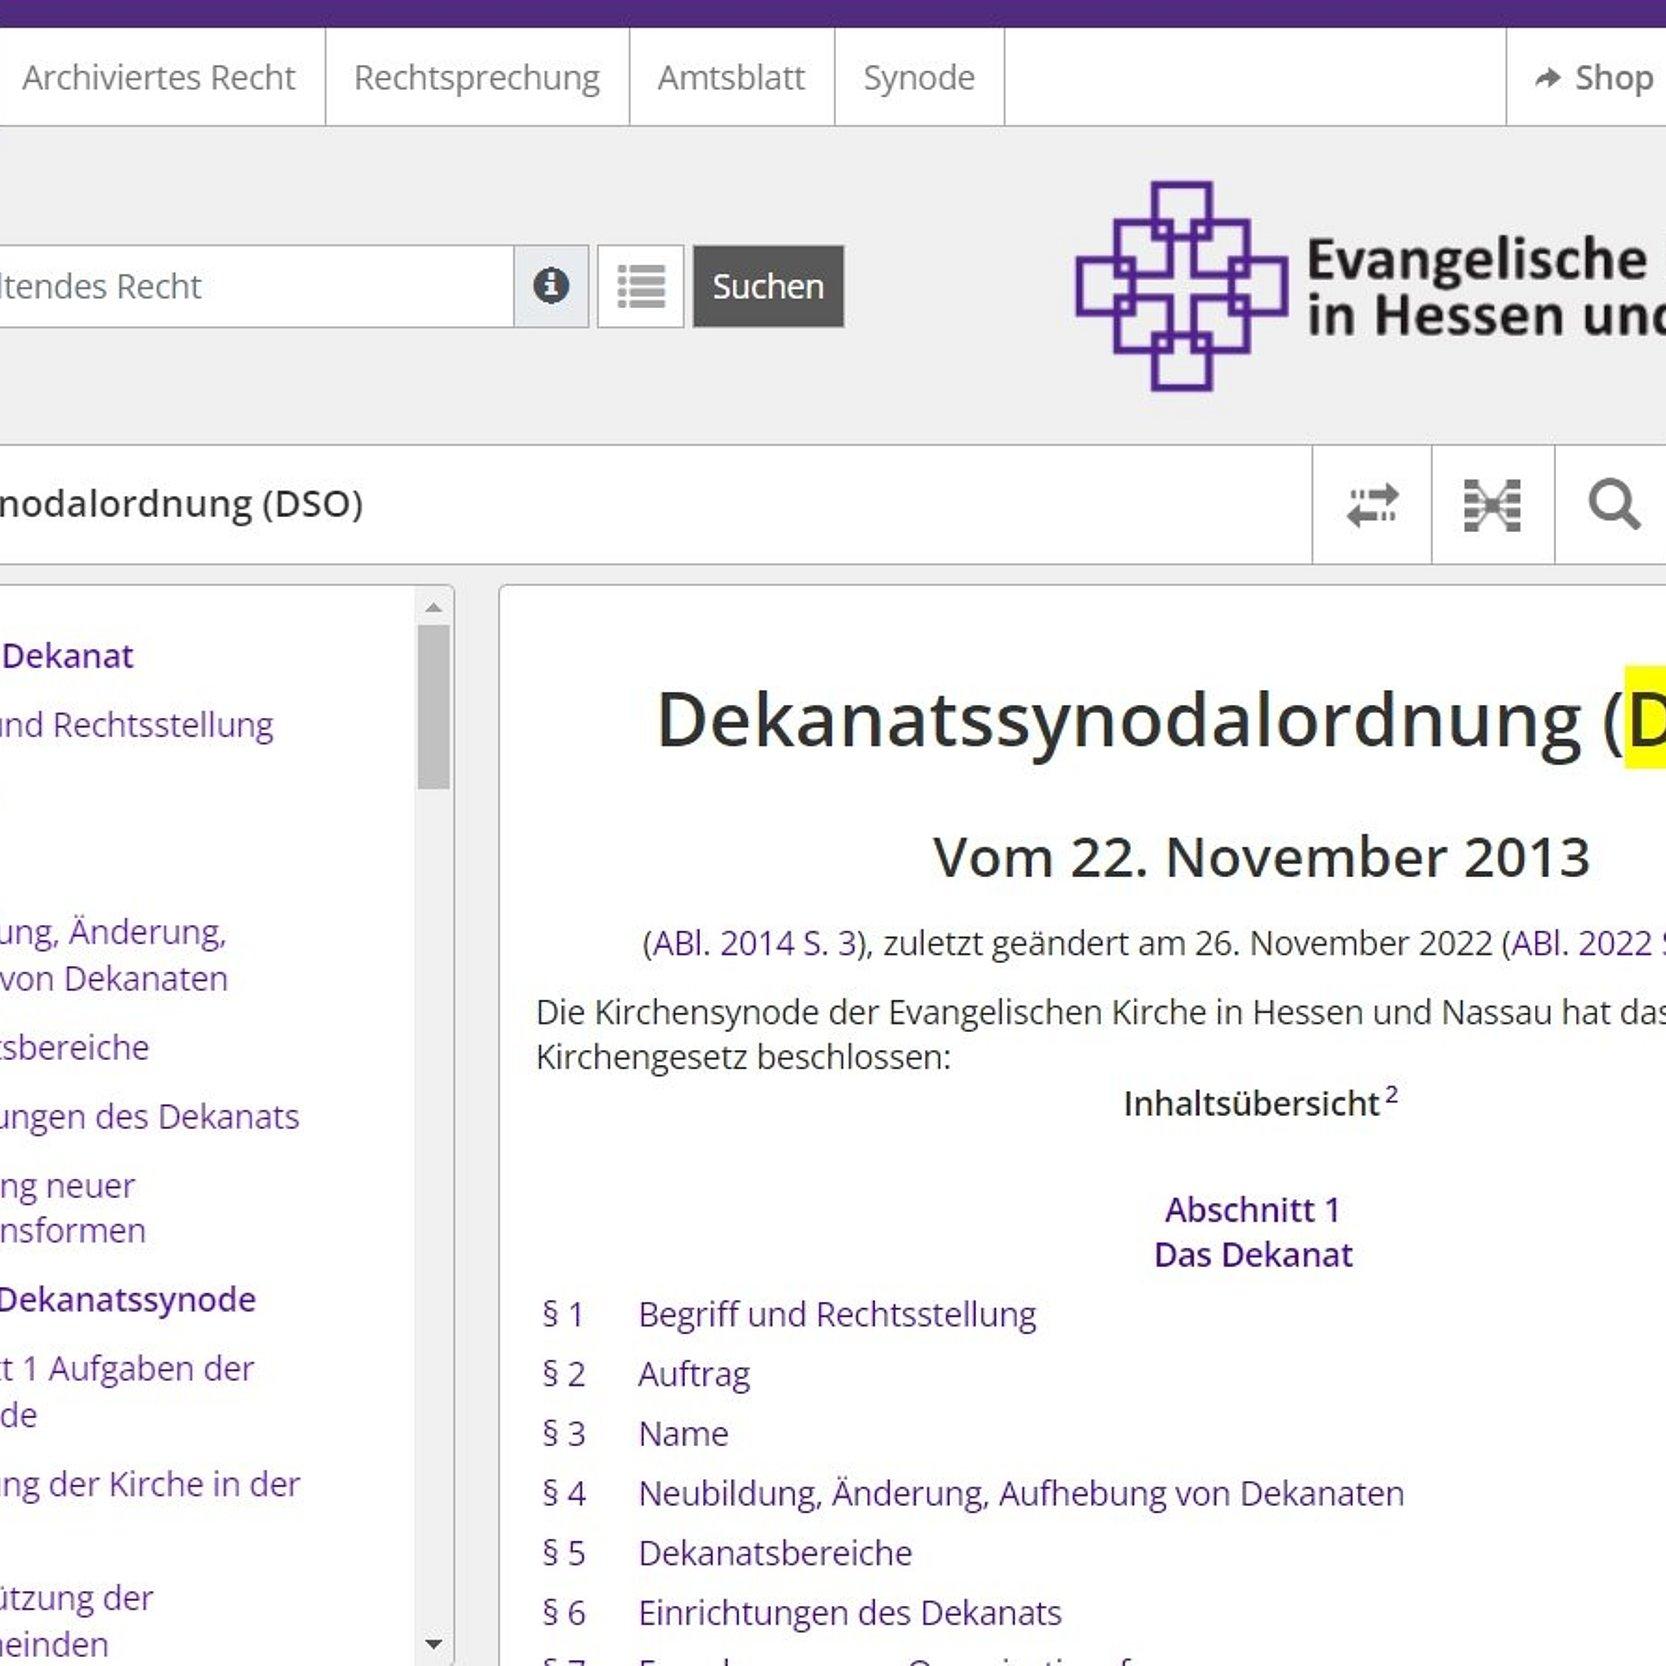 Das Foto zeigt die Internetseite mit der Dekanatssynodalordnung (DSO) der EKHN.